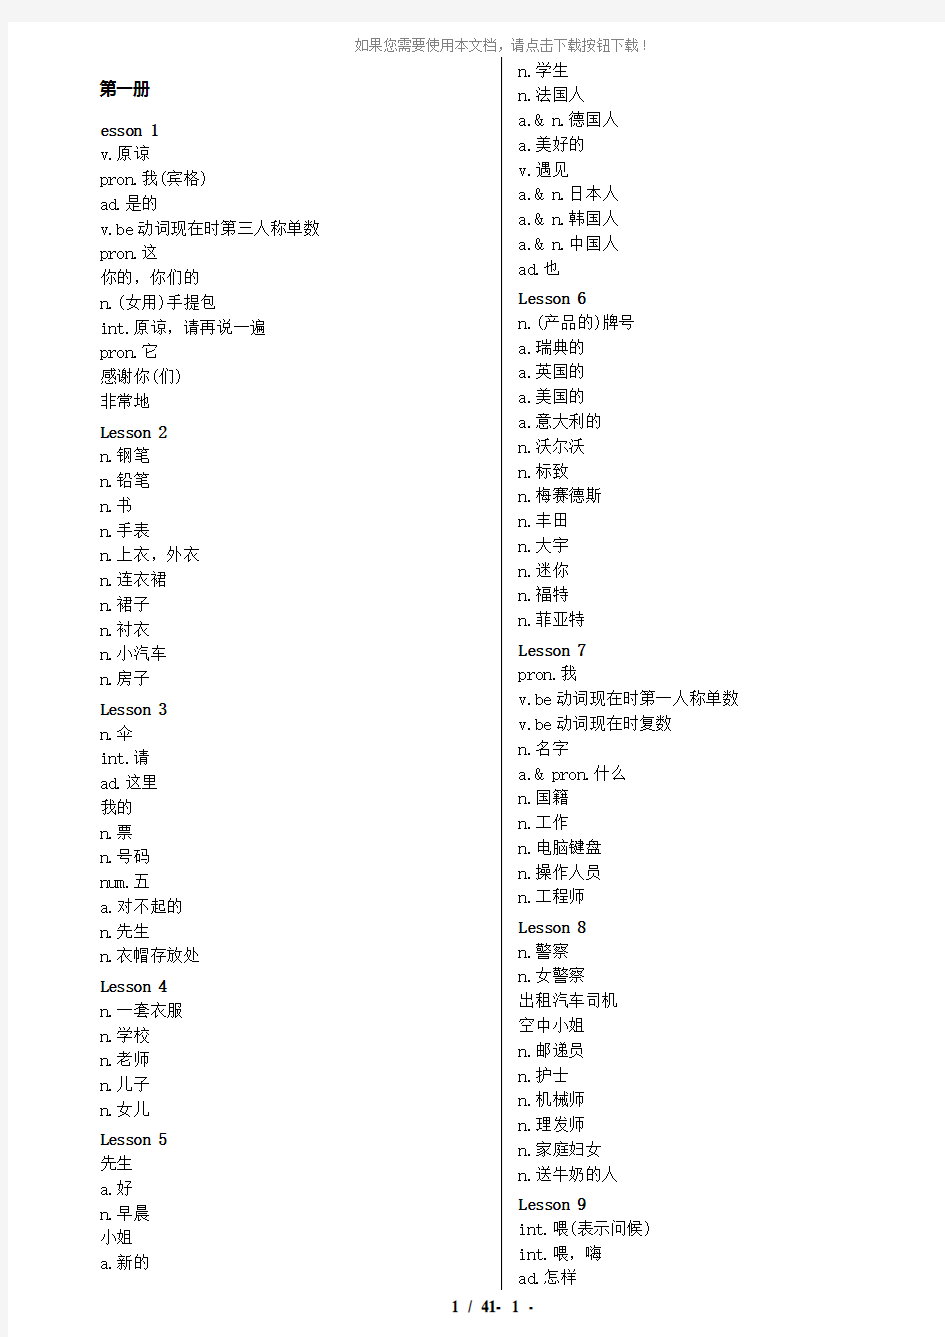 新概念英语单词表-中文版